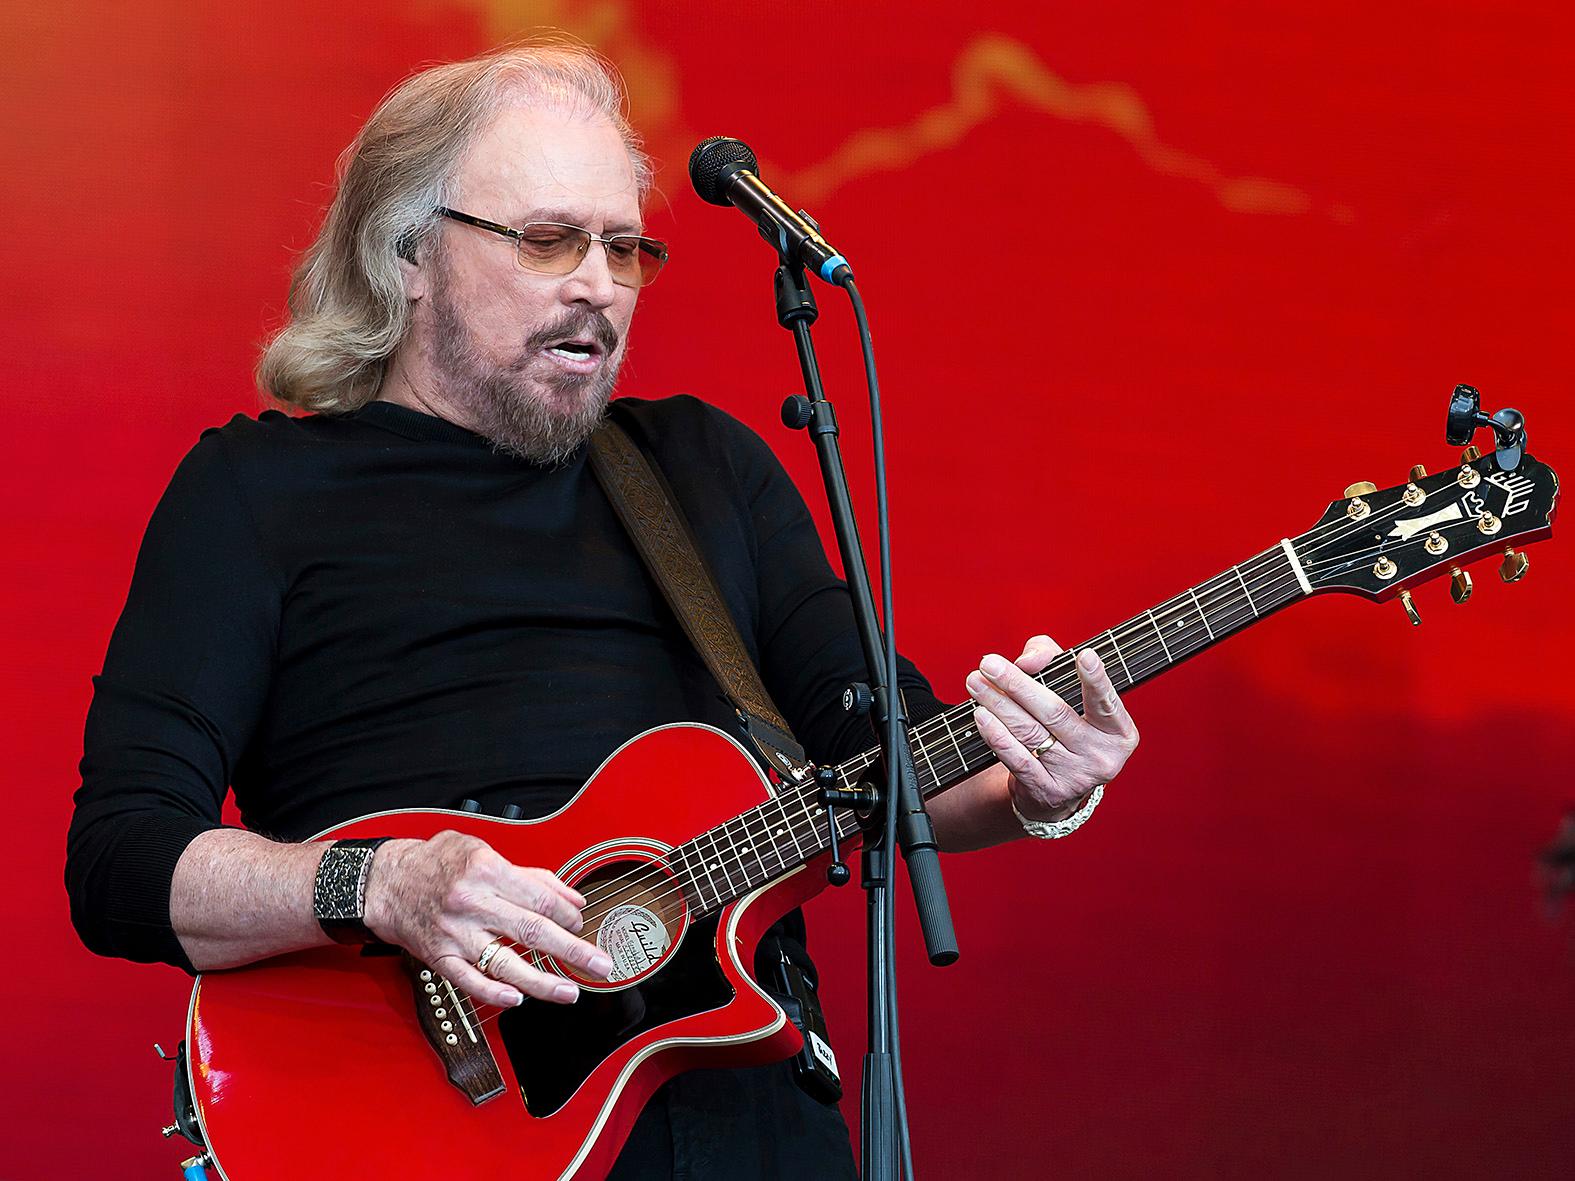 Barry Gibb återanvänder Bee Gees låtkatalog genom att spela in låtarna på nytt som country. 